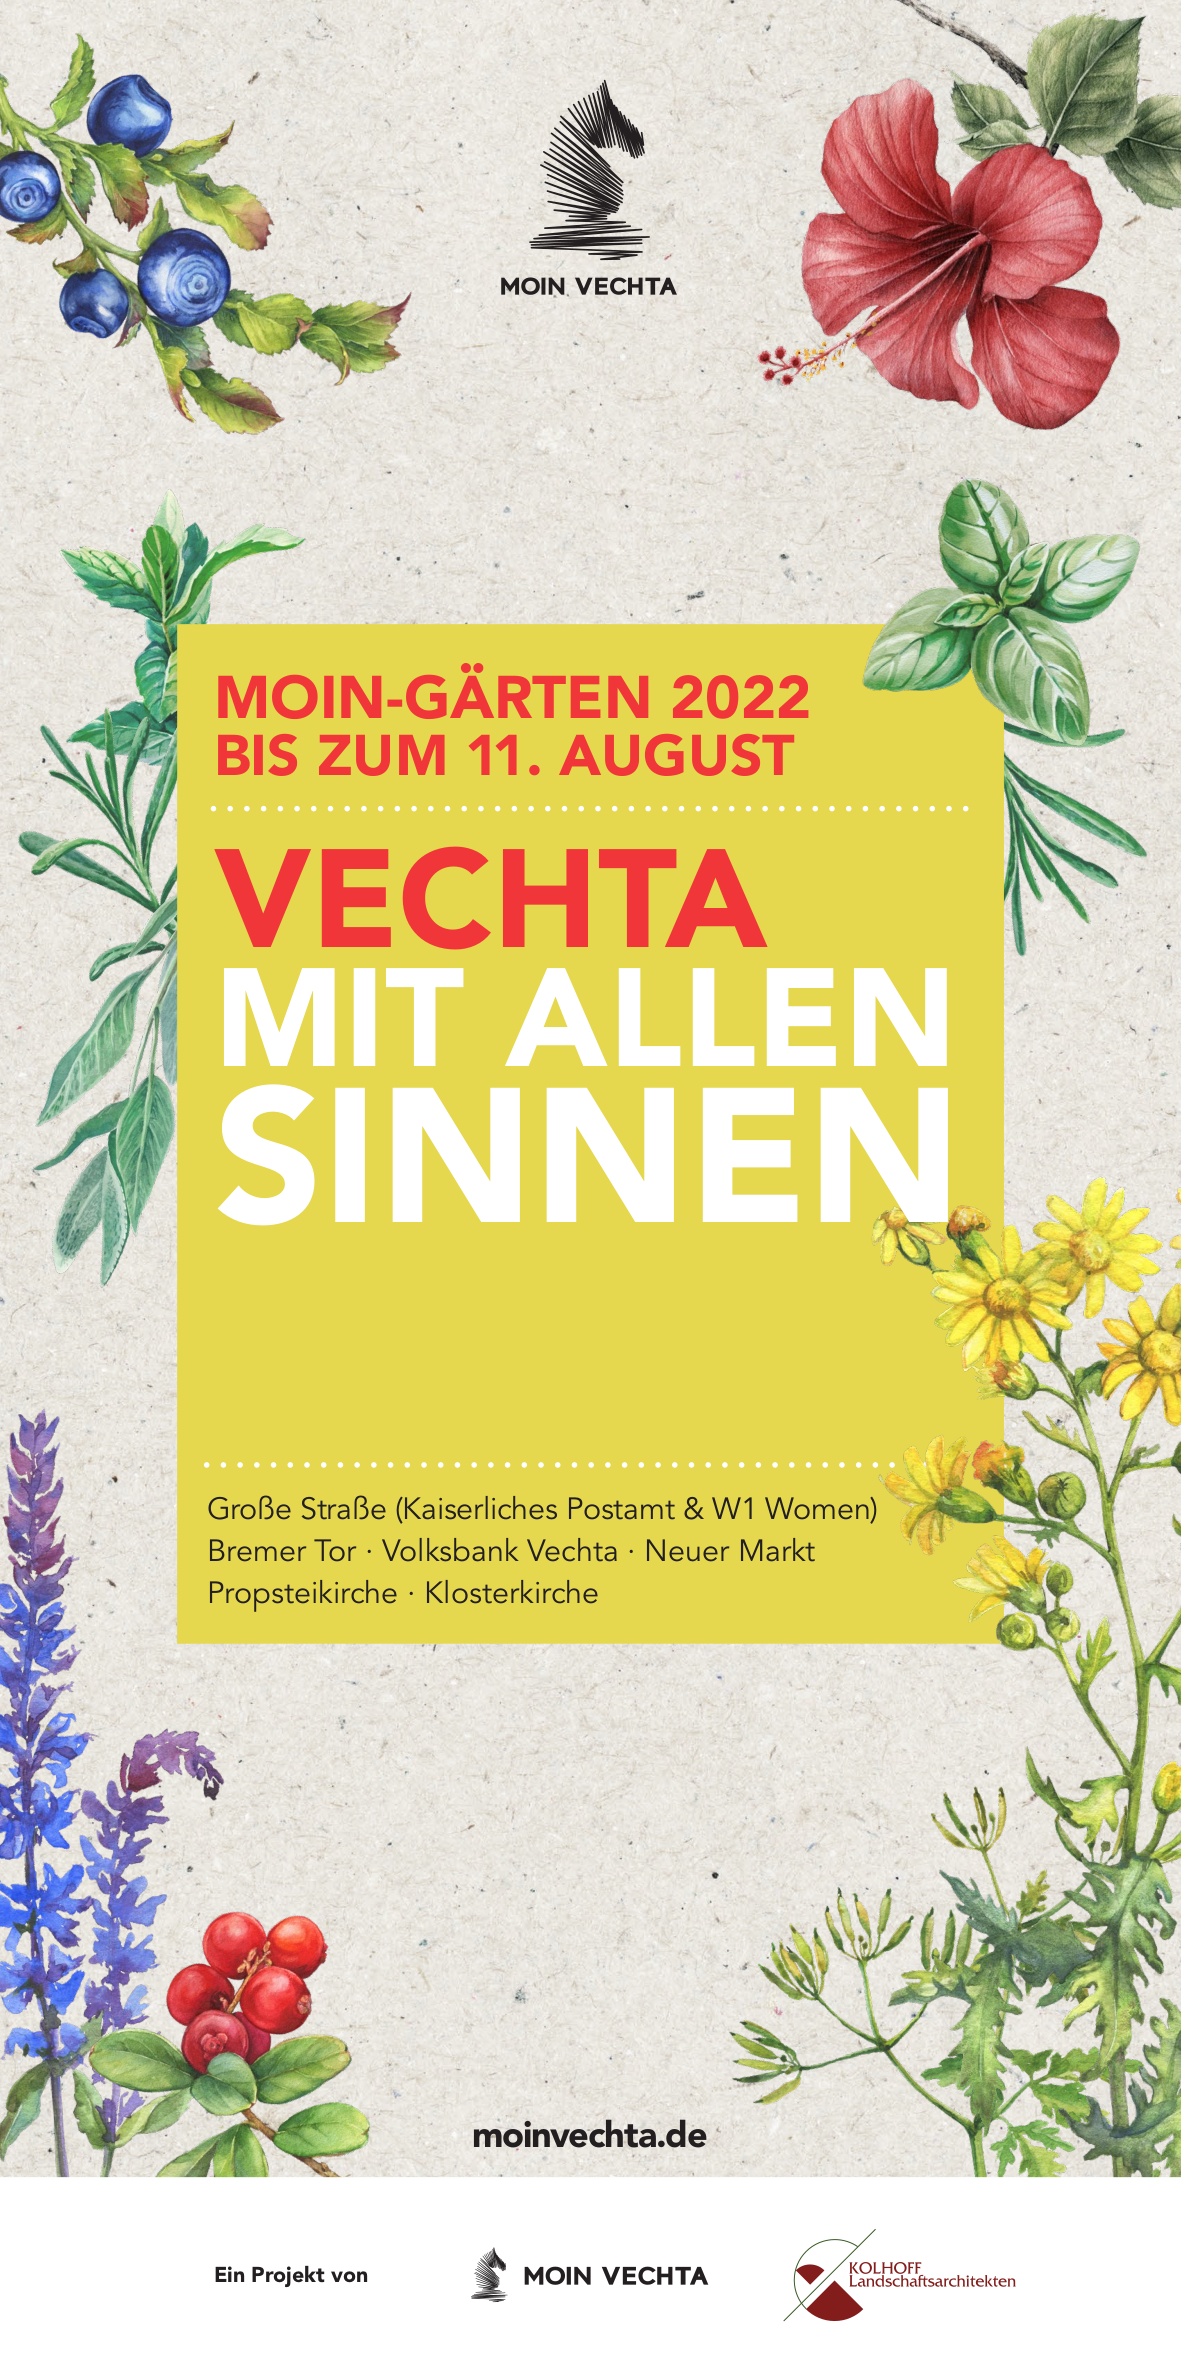 MOIN Vechta Gärten 2022 Plakat 300x600 04-22 (1)